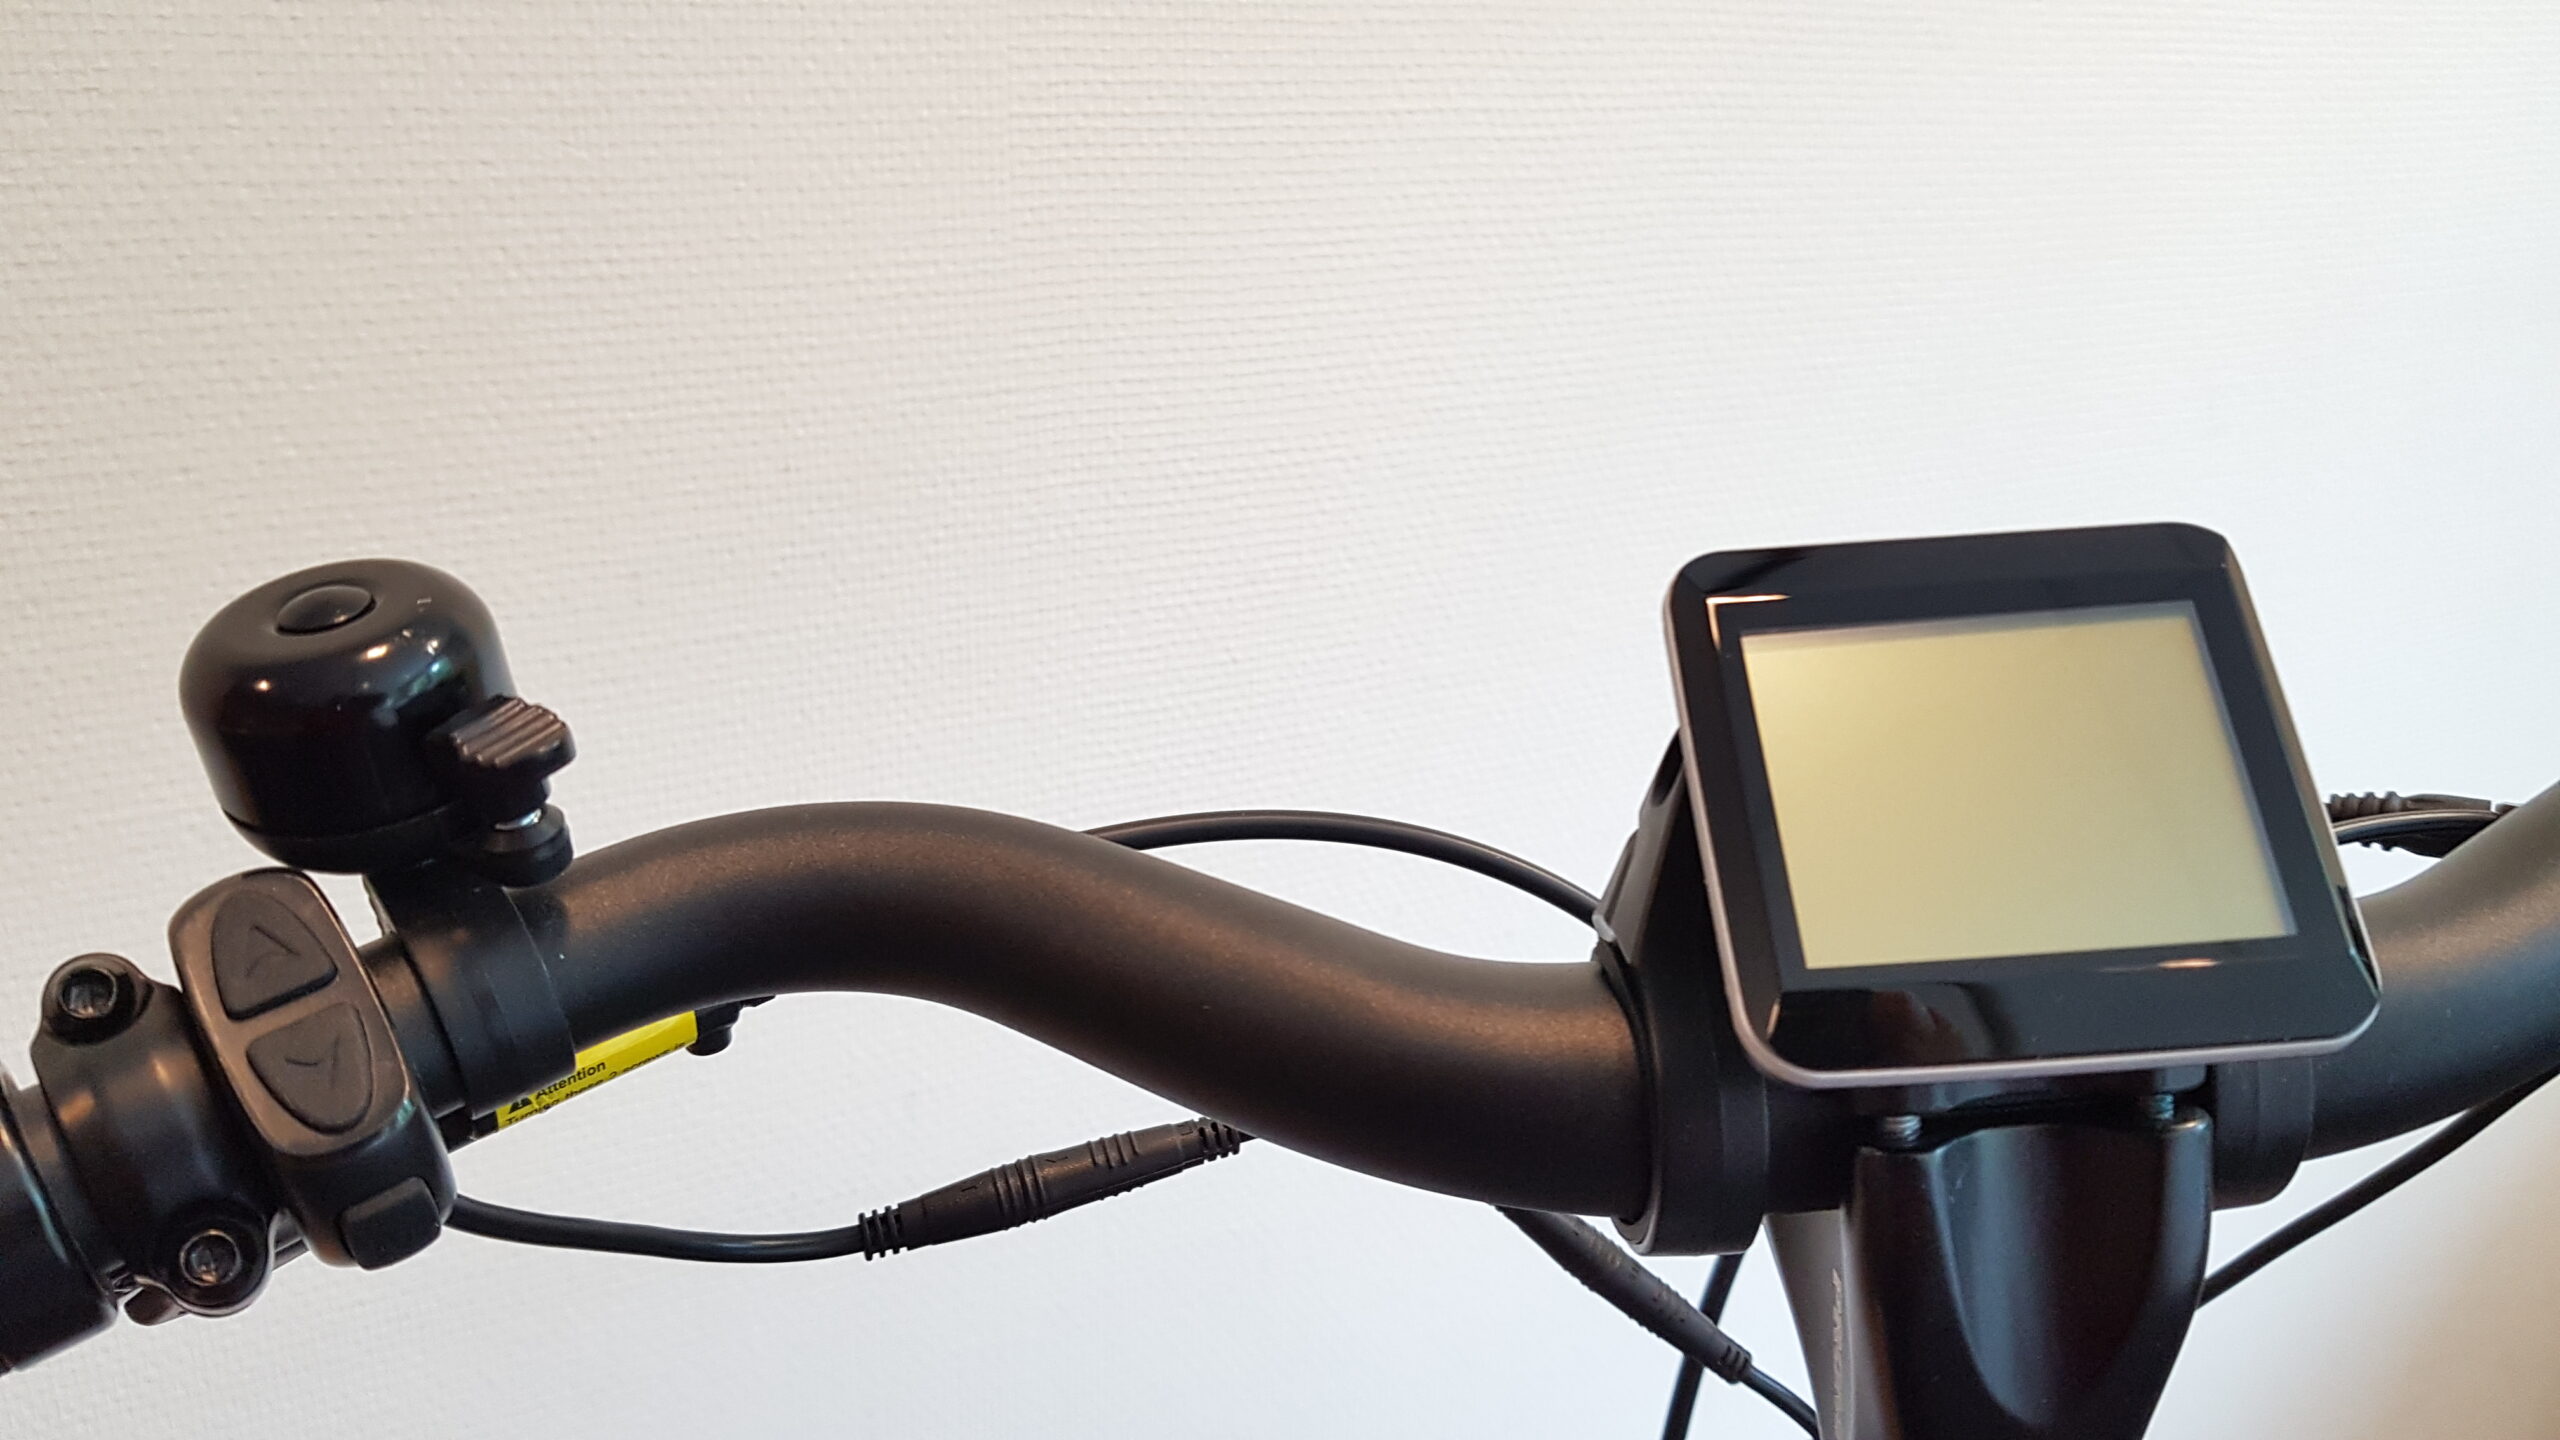 LCD display V3 met aluminium behuizing kristallen venster voor City 7, Suburb Tour 8 met naafmotor. RAP elektrische fietsen